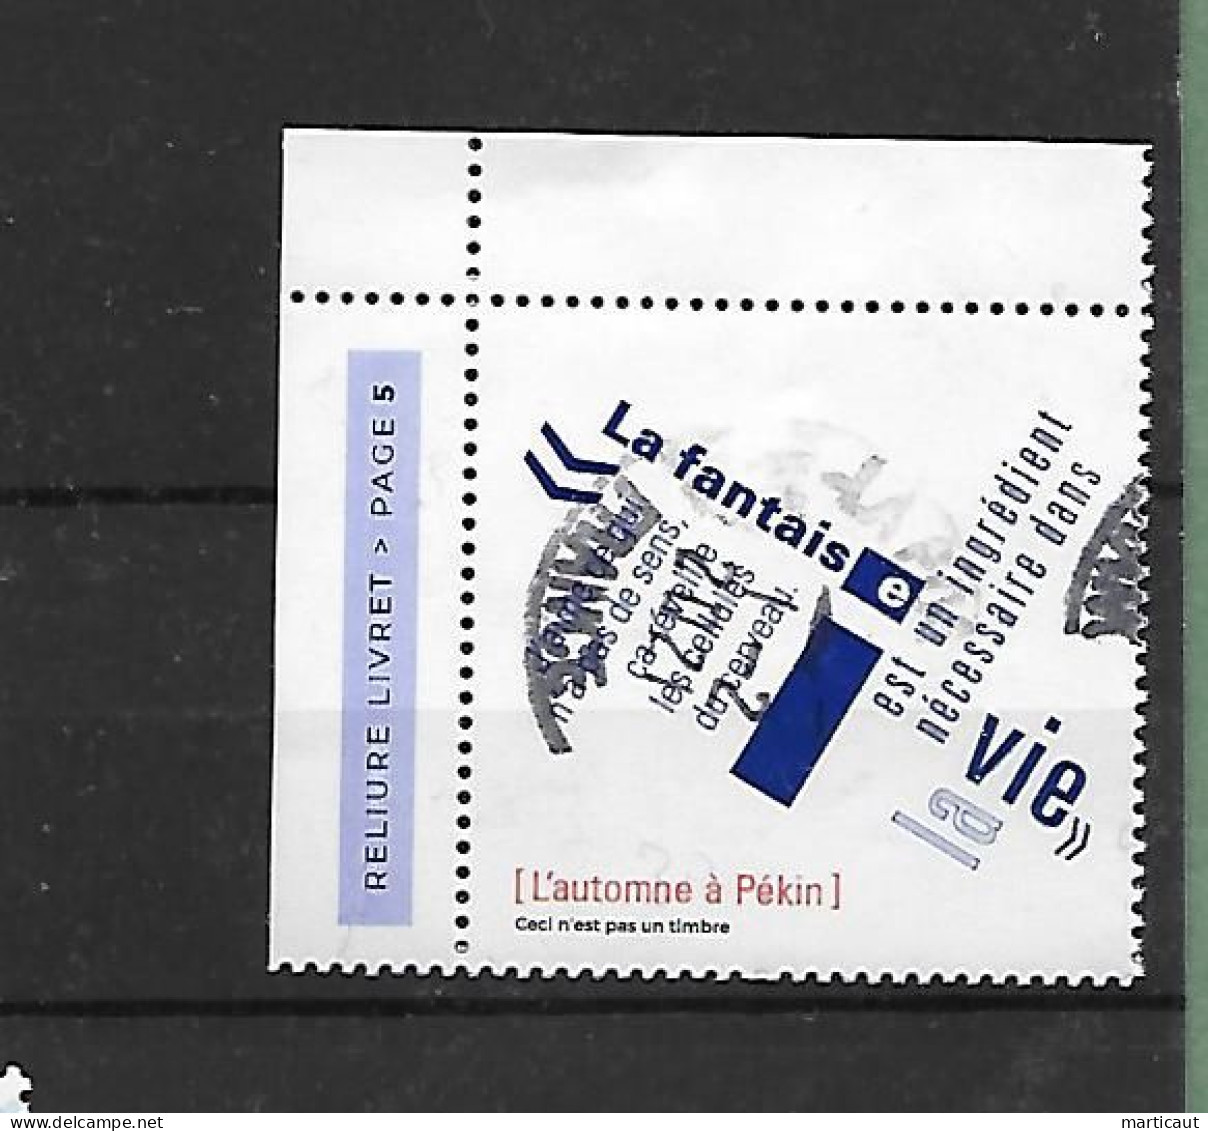 Petit lot de timbres oblitérés vendus en l'état